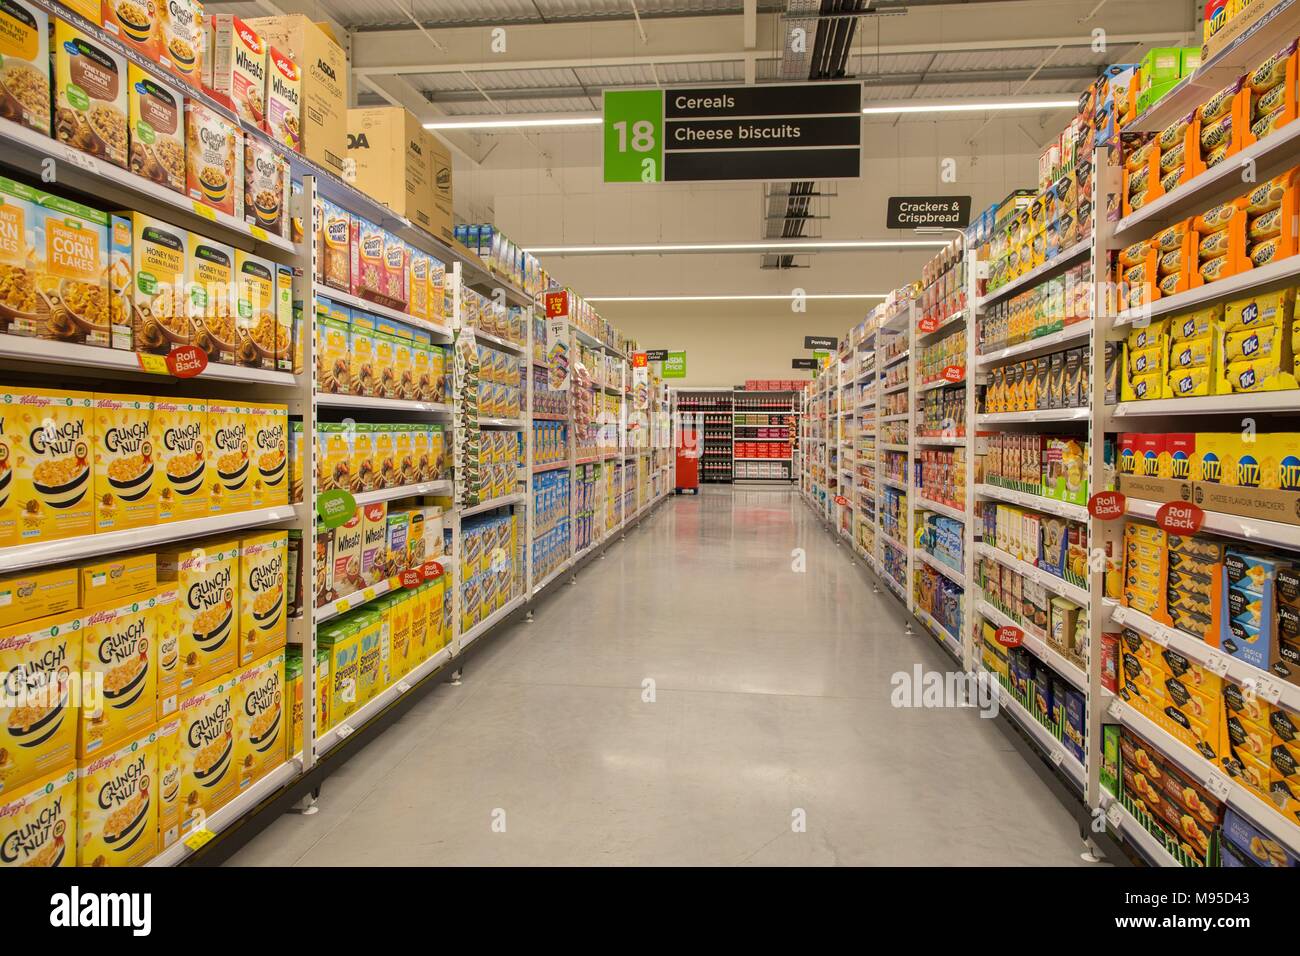 Los cereales y galletas de queso en pleno estantes en un supermercado Asda. Foto de stock